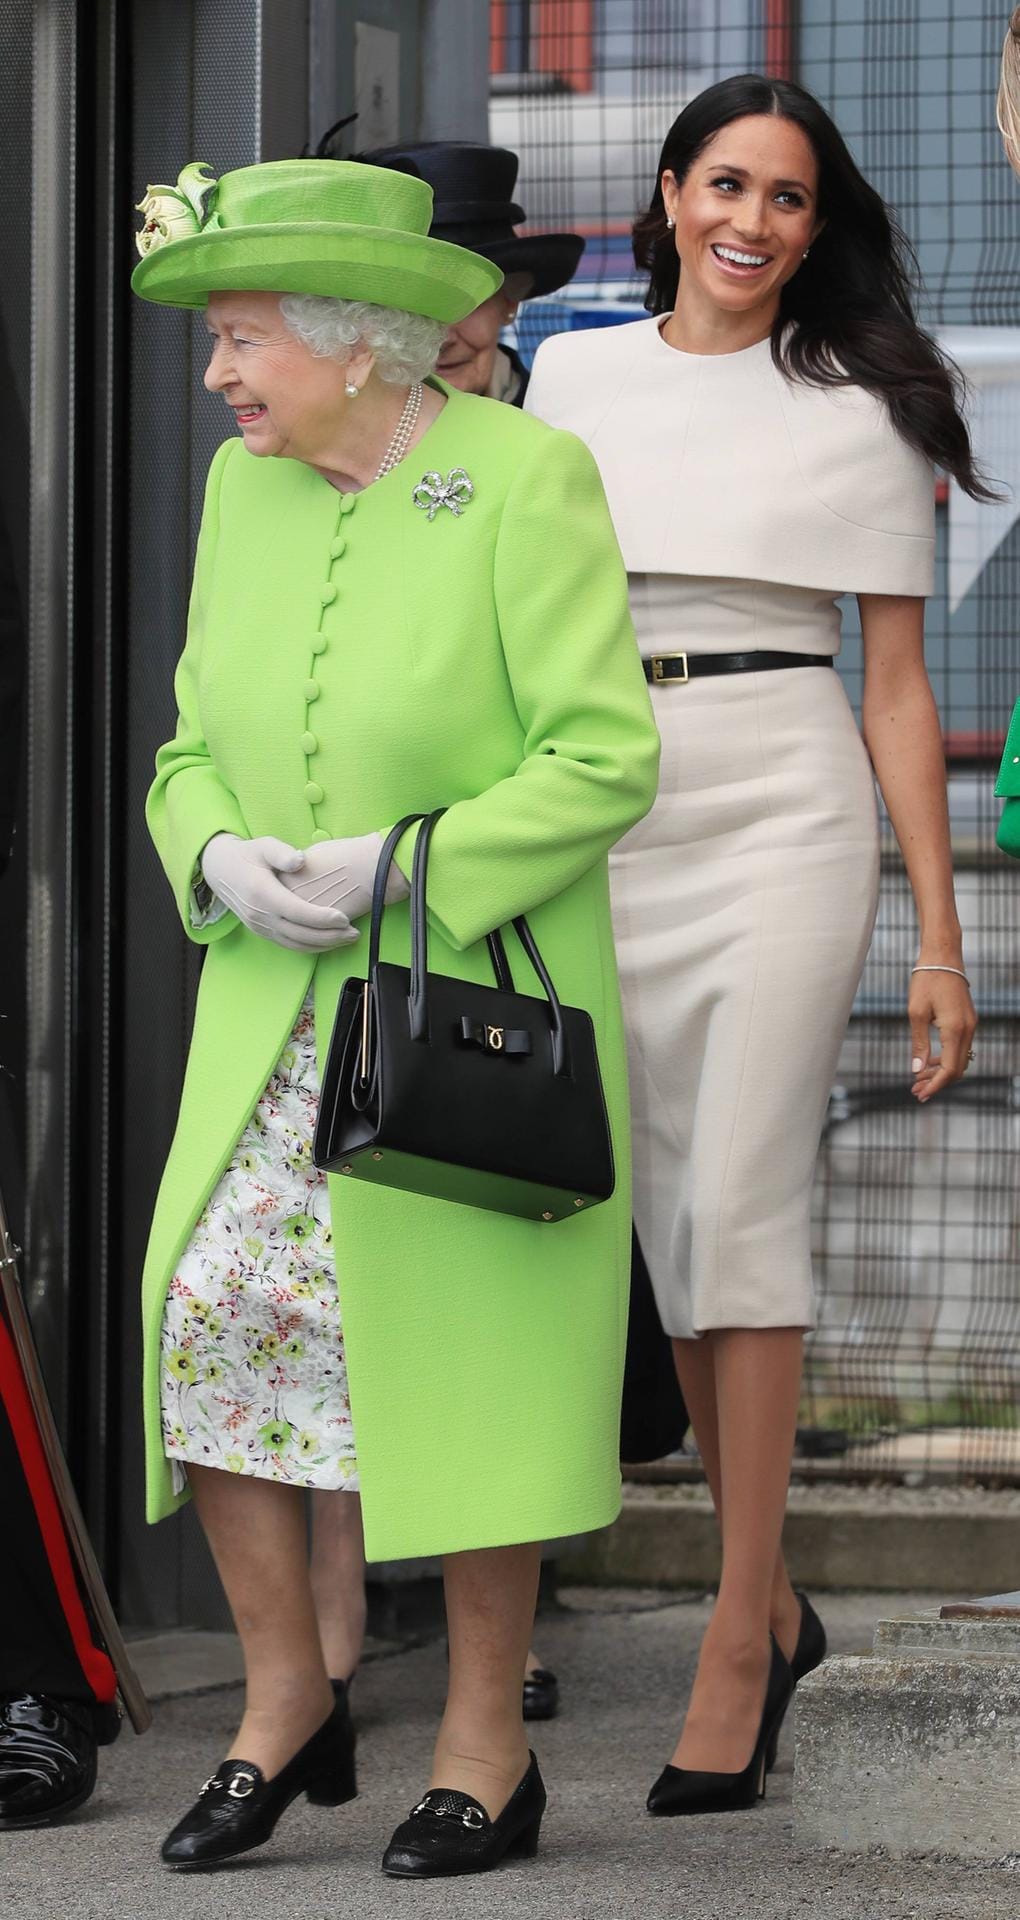 Juni 2018: Während die Queen beim ersten Solo-Termin von Meghan in Grün triumphiert, wählt die Herzogin von Sussex erneut ein Kleid in Creme.